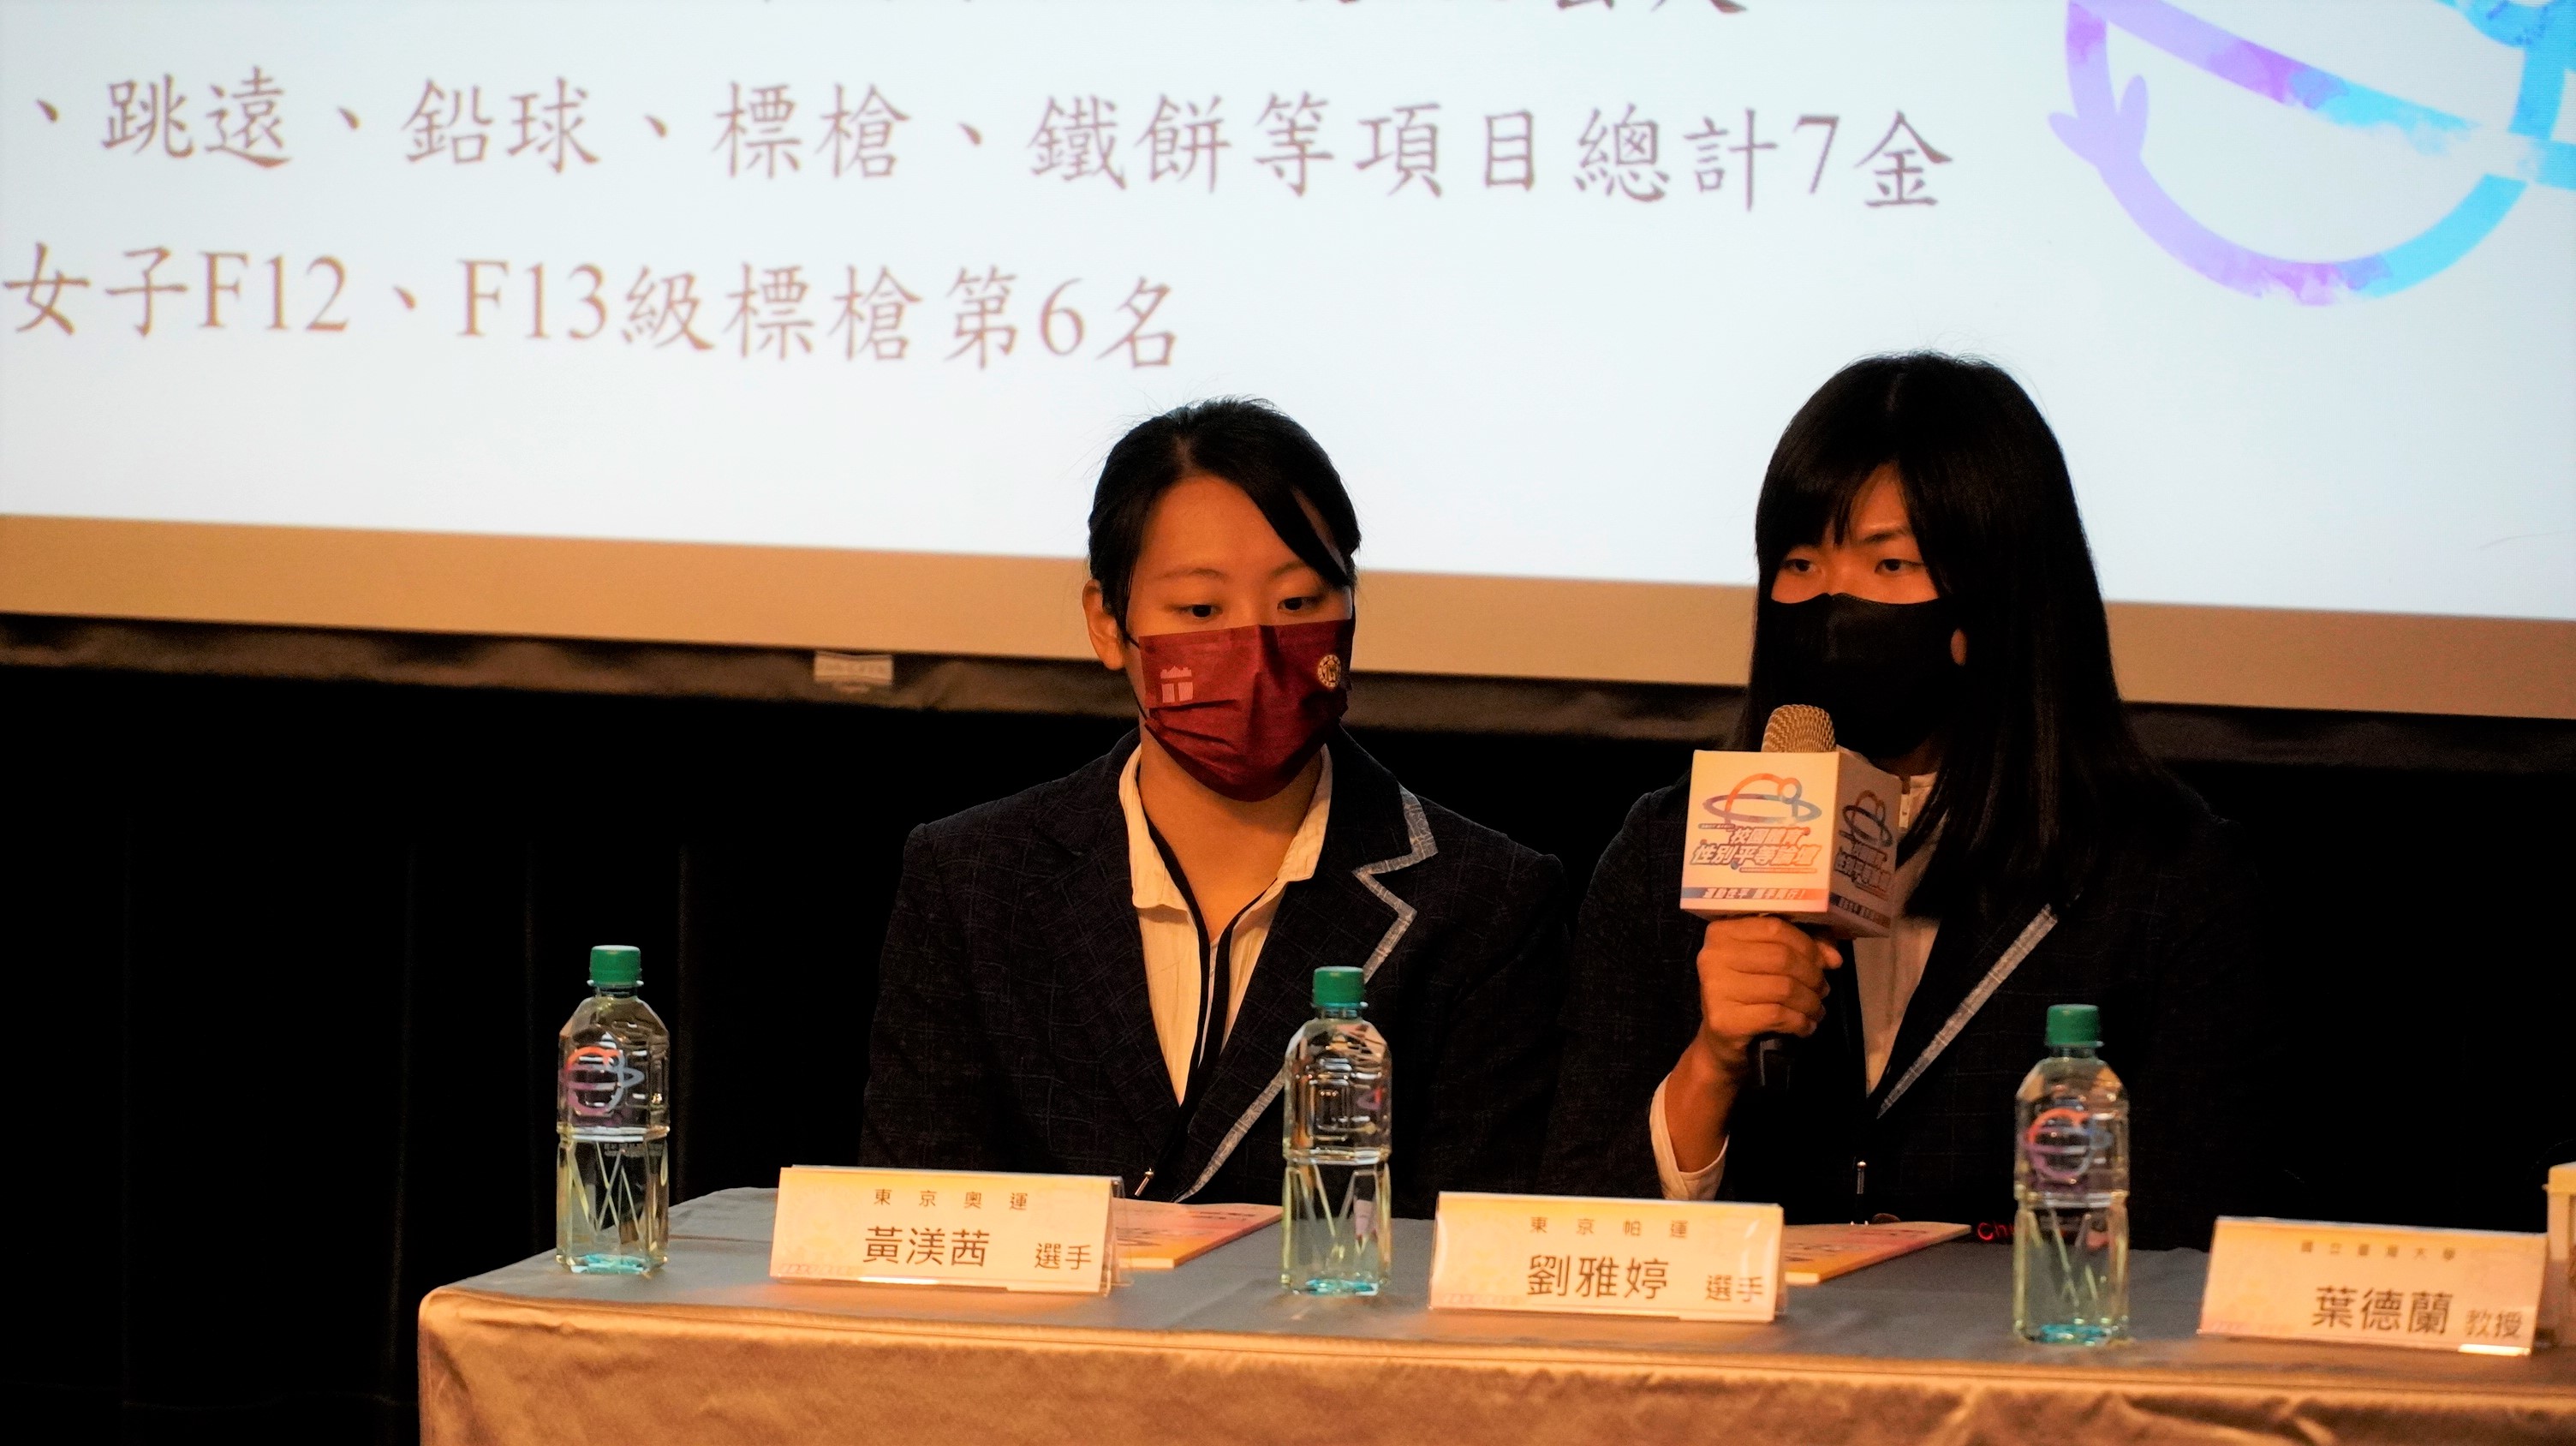 東奧選手黃渼茜及帕奧選手劉雅婷擔任第三屆「校園體育性別平等論壇」與談人。(學校組)